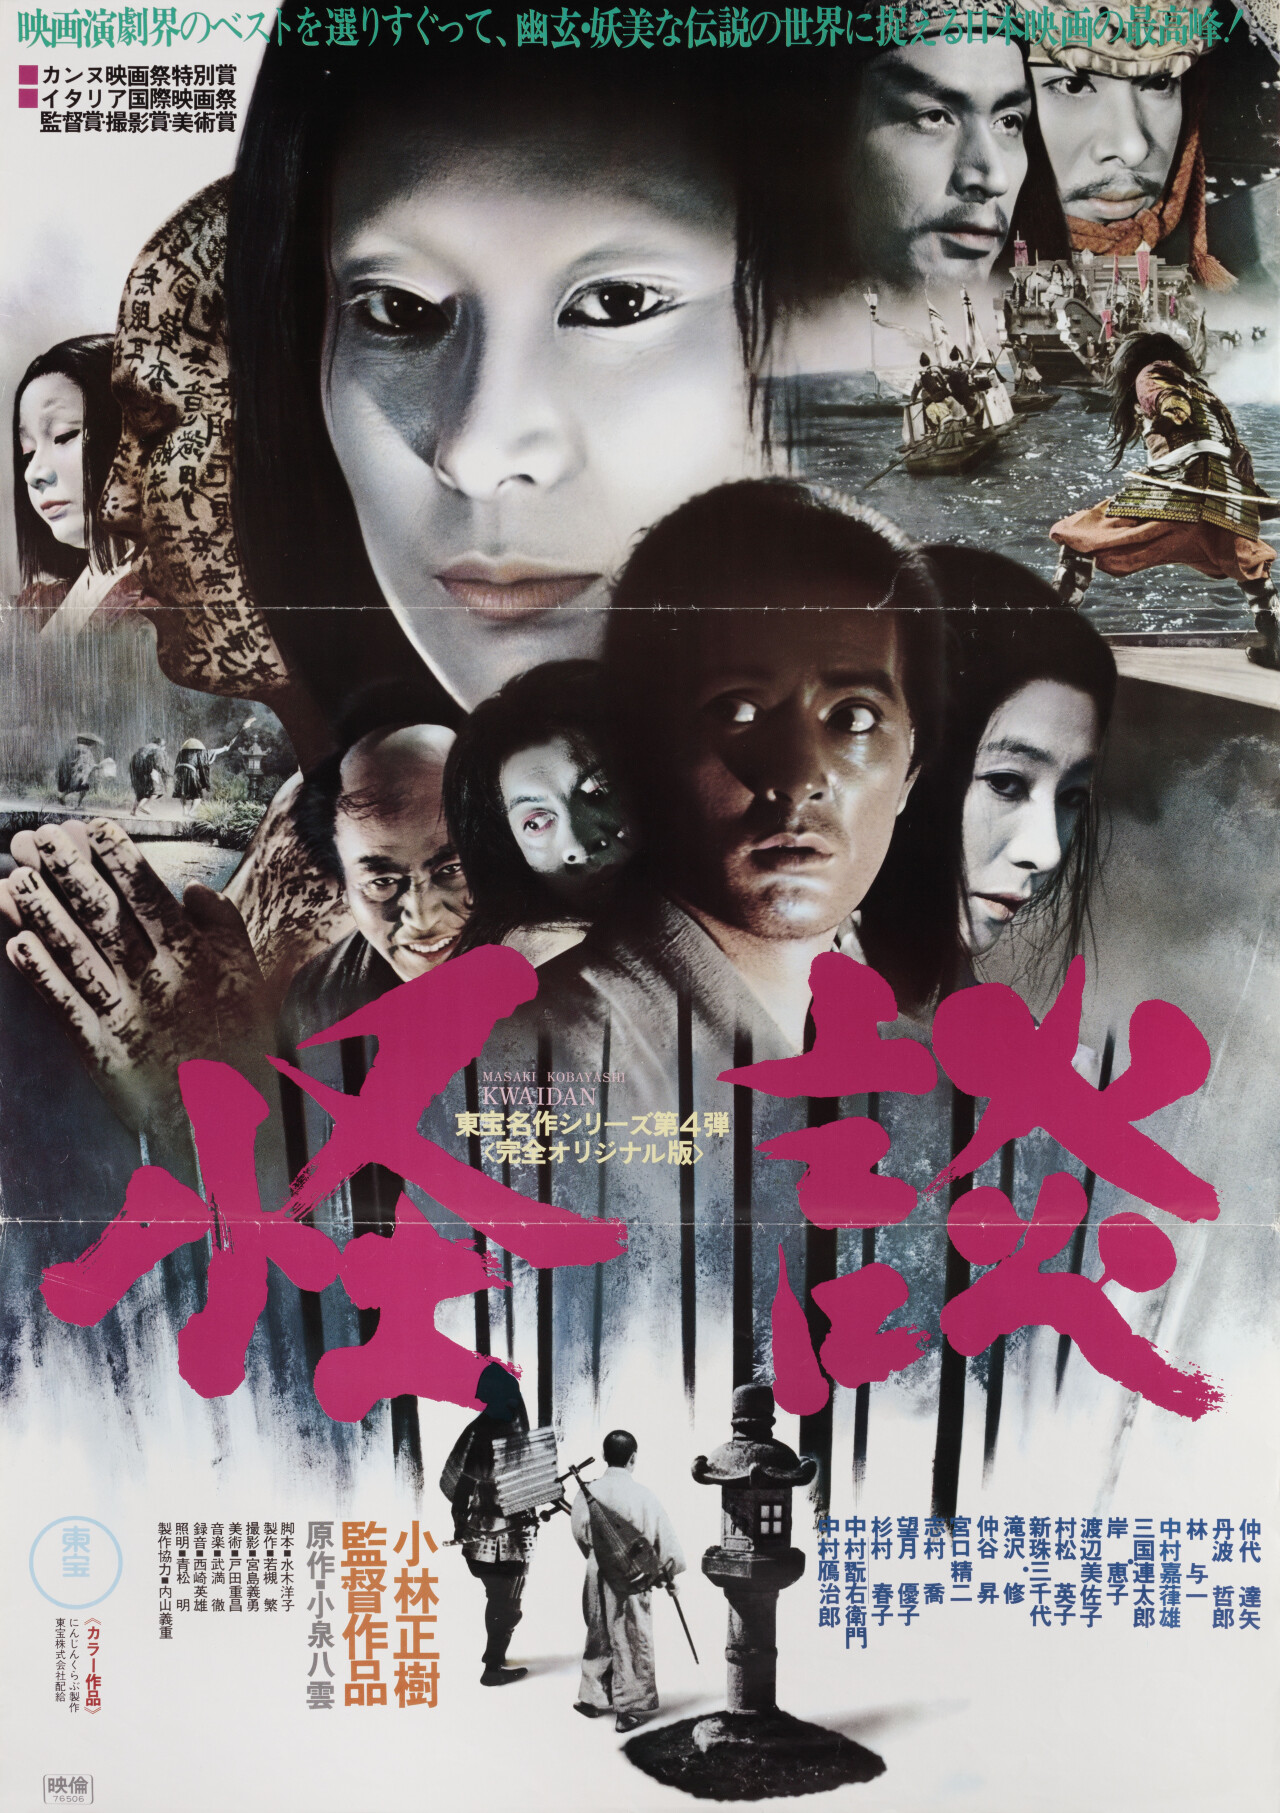 Кайдан: Повествование о загадочном и ужасном (Kwaidan, 1964), режиссёр Масаки Кобаяси, японский постер к фильму (ужасы, 1976 год)